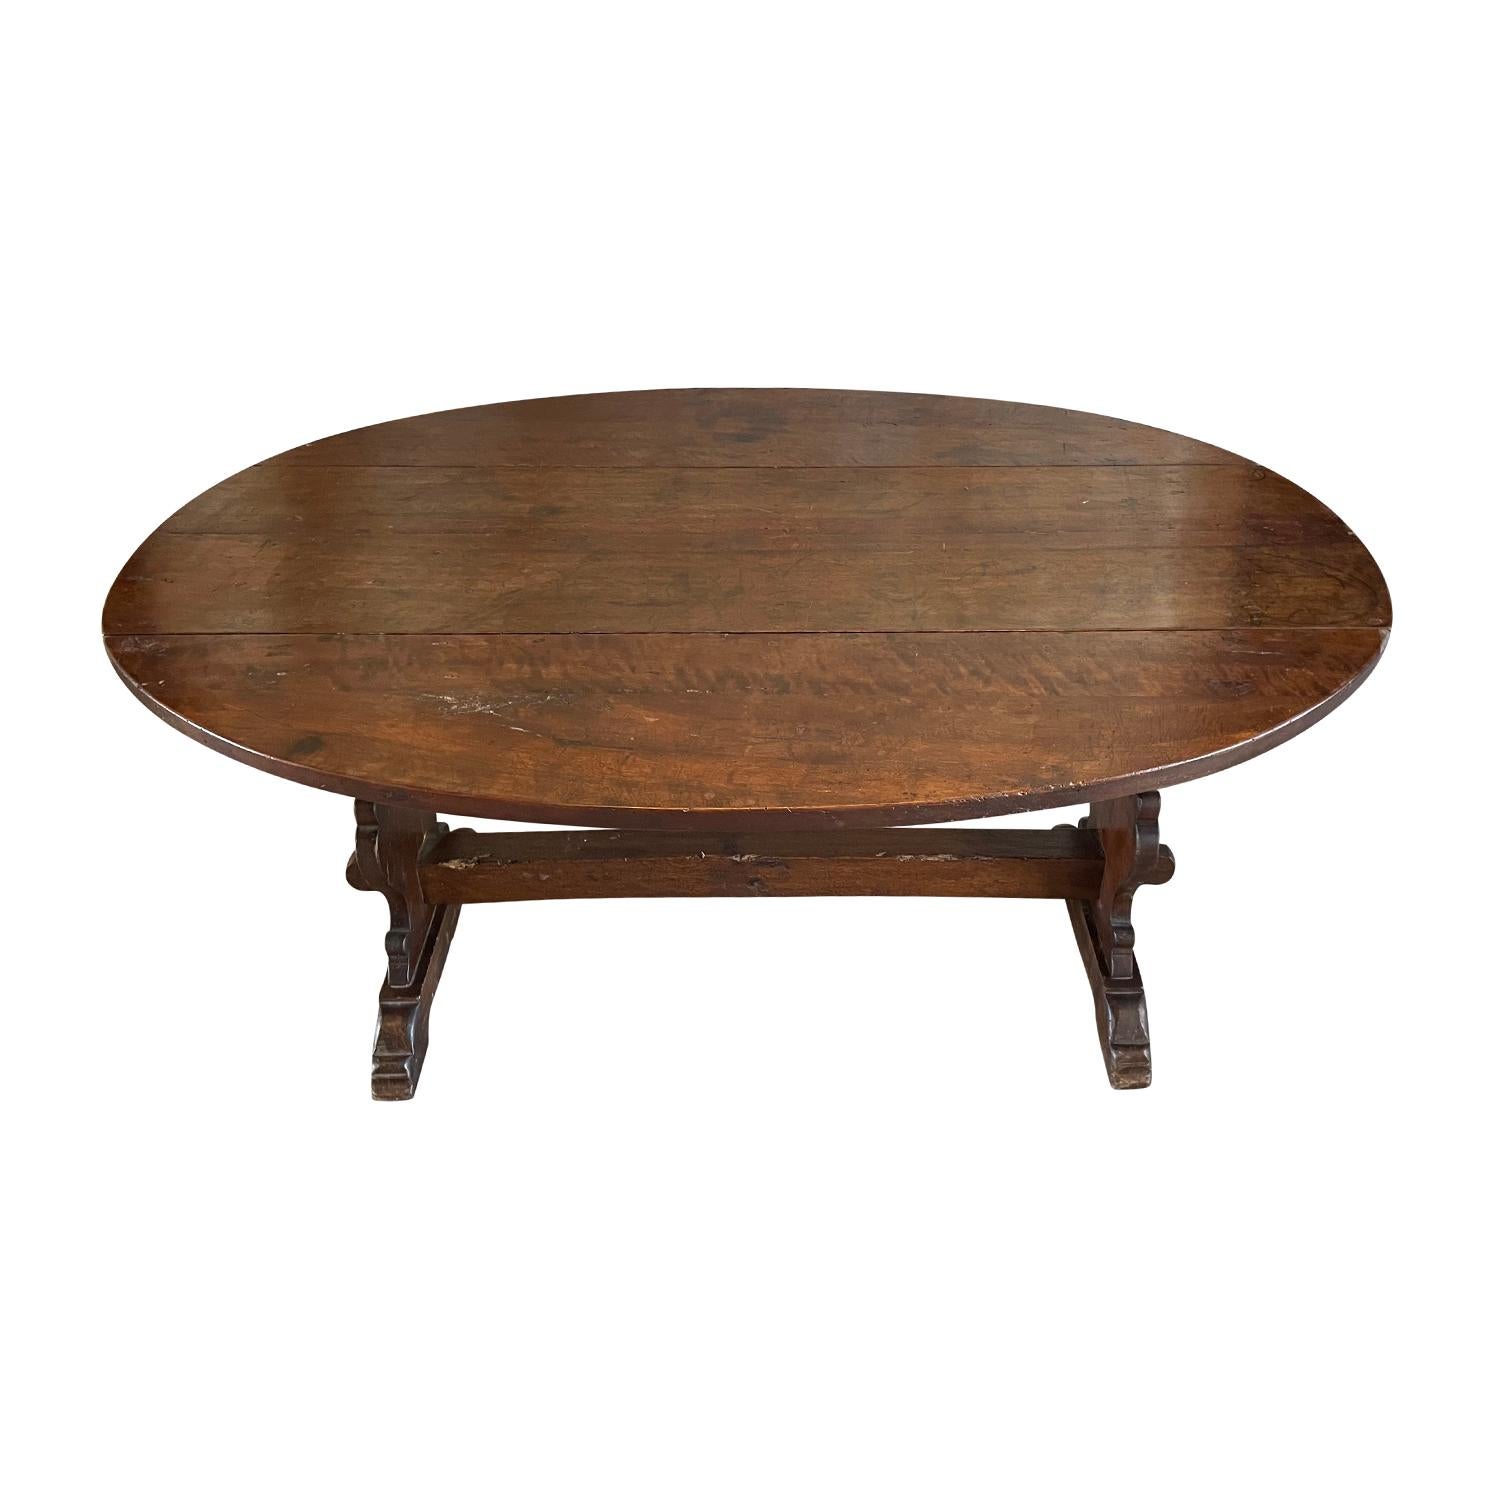 Ancienne petite table de salle à manger ovale italienne, cirée à la main. Cette table Condit est fabriquée à la main en noyer et repose sur une solide base à tréteaux. Elle est en bon état. Les deux côtés de la table de salle à manger sont pliables.